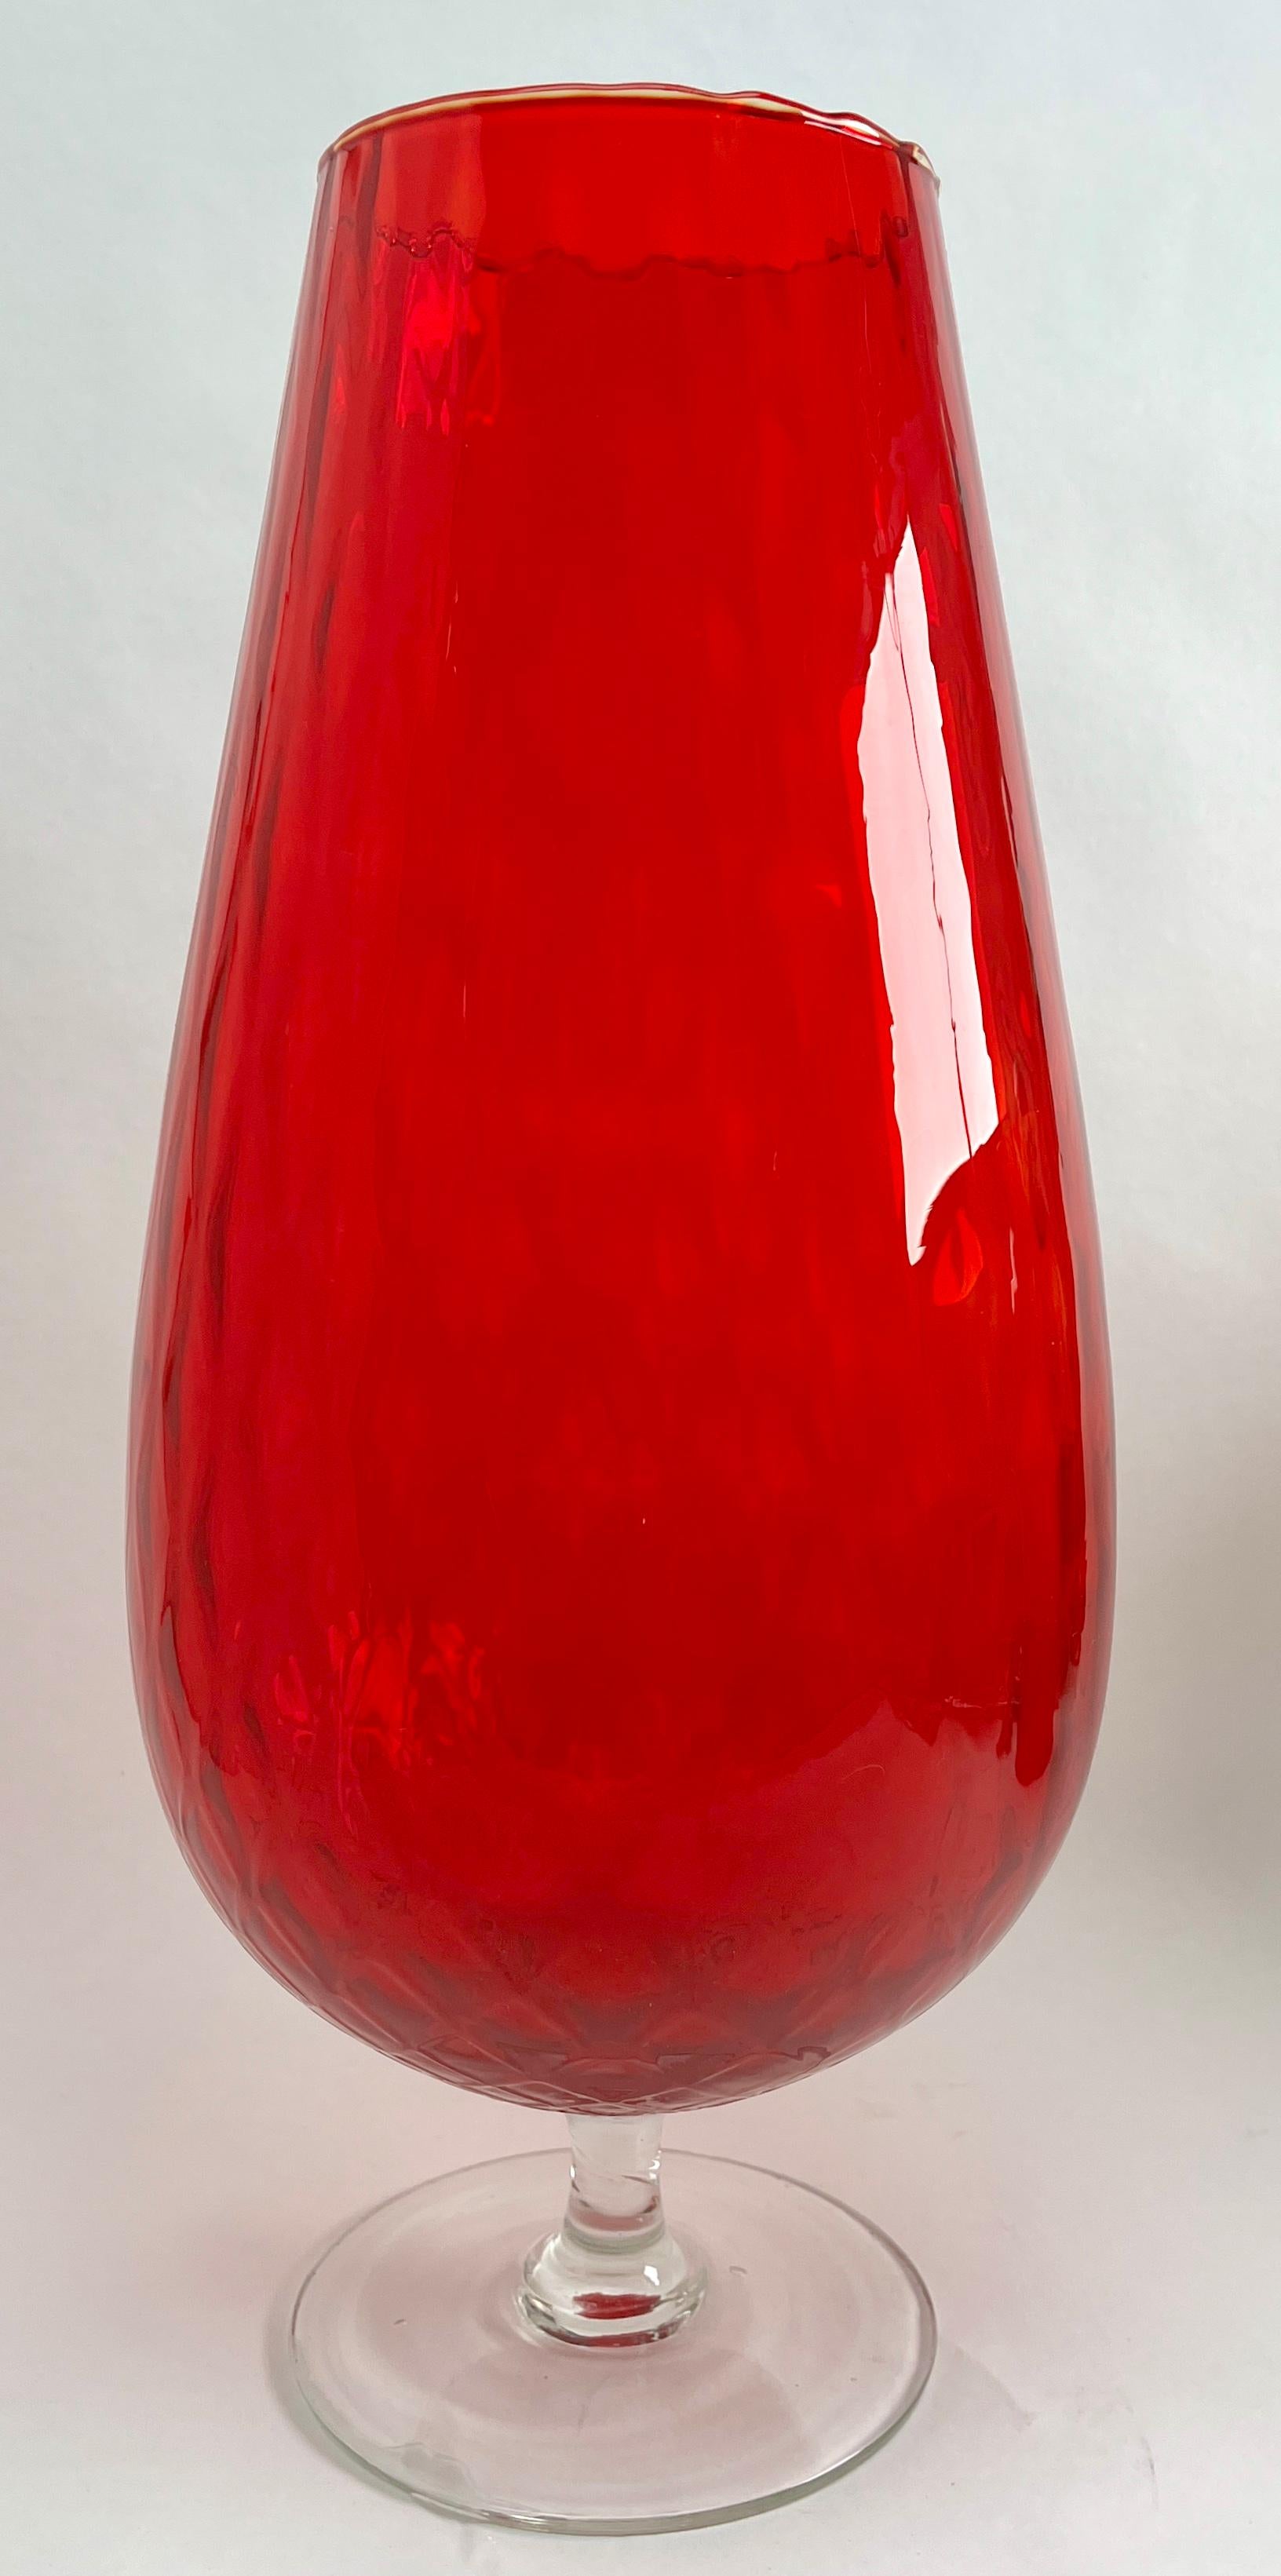 Opaline di Florence (Empoli) opalisierende italienische Kunstglasvase der späten 1950er oder frühen 1960er Jahre. 

Wunderschöner mundgeblasener Opal und handapplizierter weißer Fuß
Maße: 38 cm hoch, Durchmesser 18 cm

Das Stück ist in